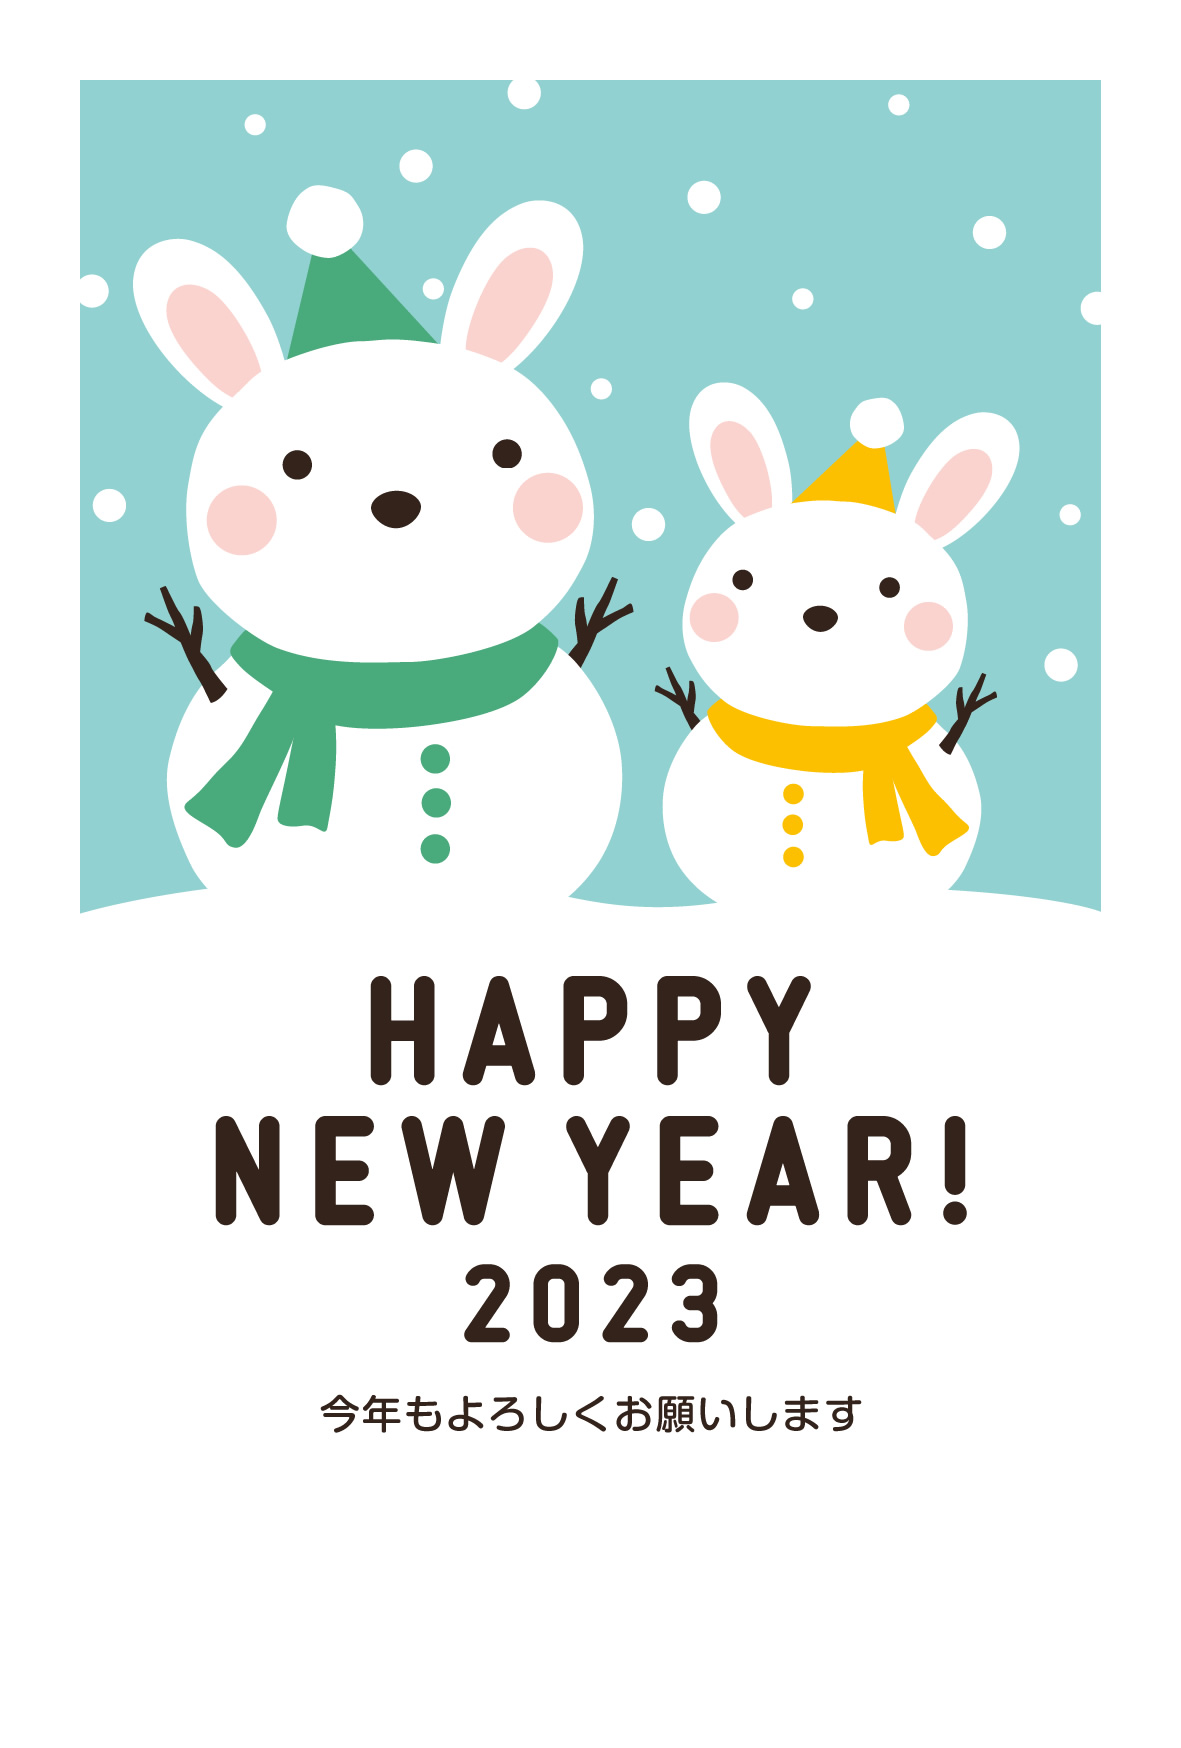 2023年賀状デザイン無料テンプレート「雪だるまになったかわいいウサギの親子」